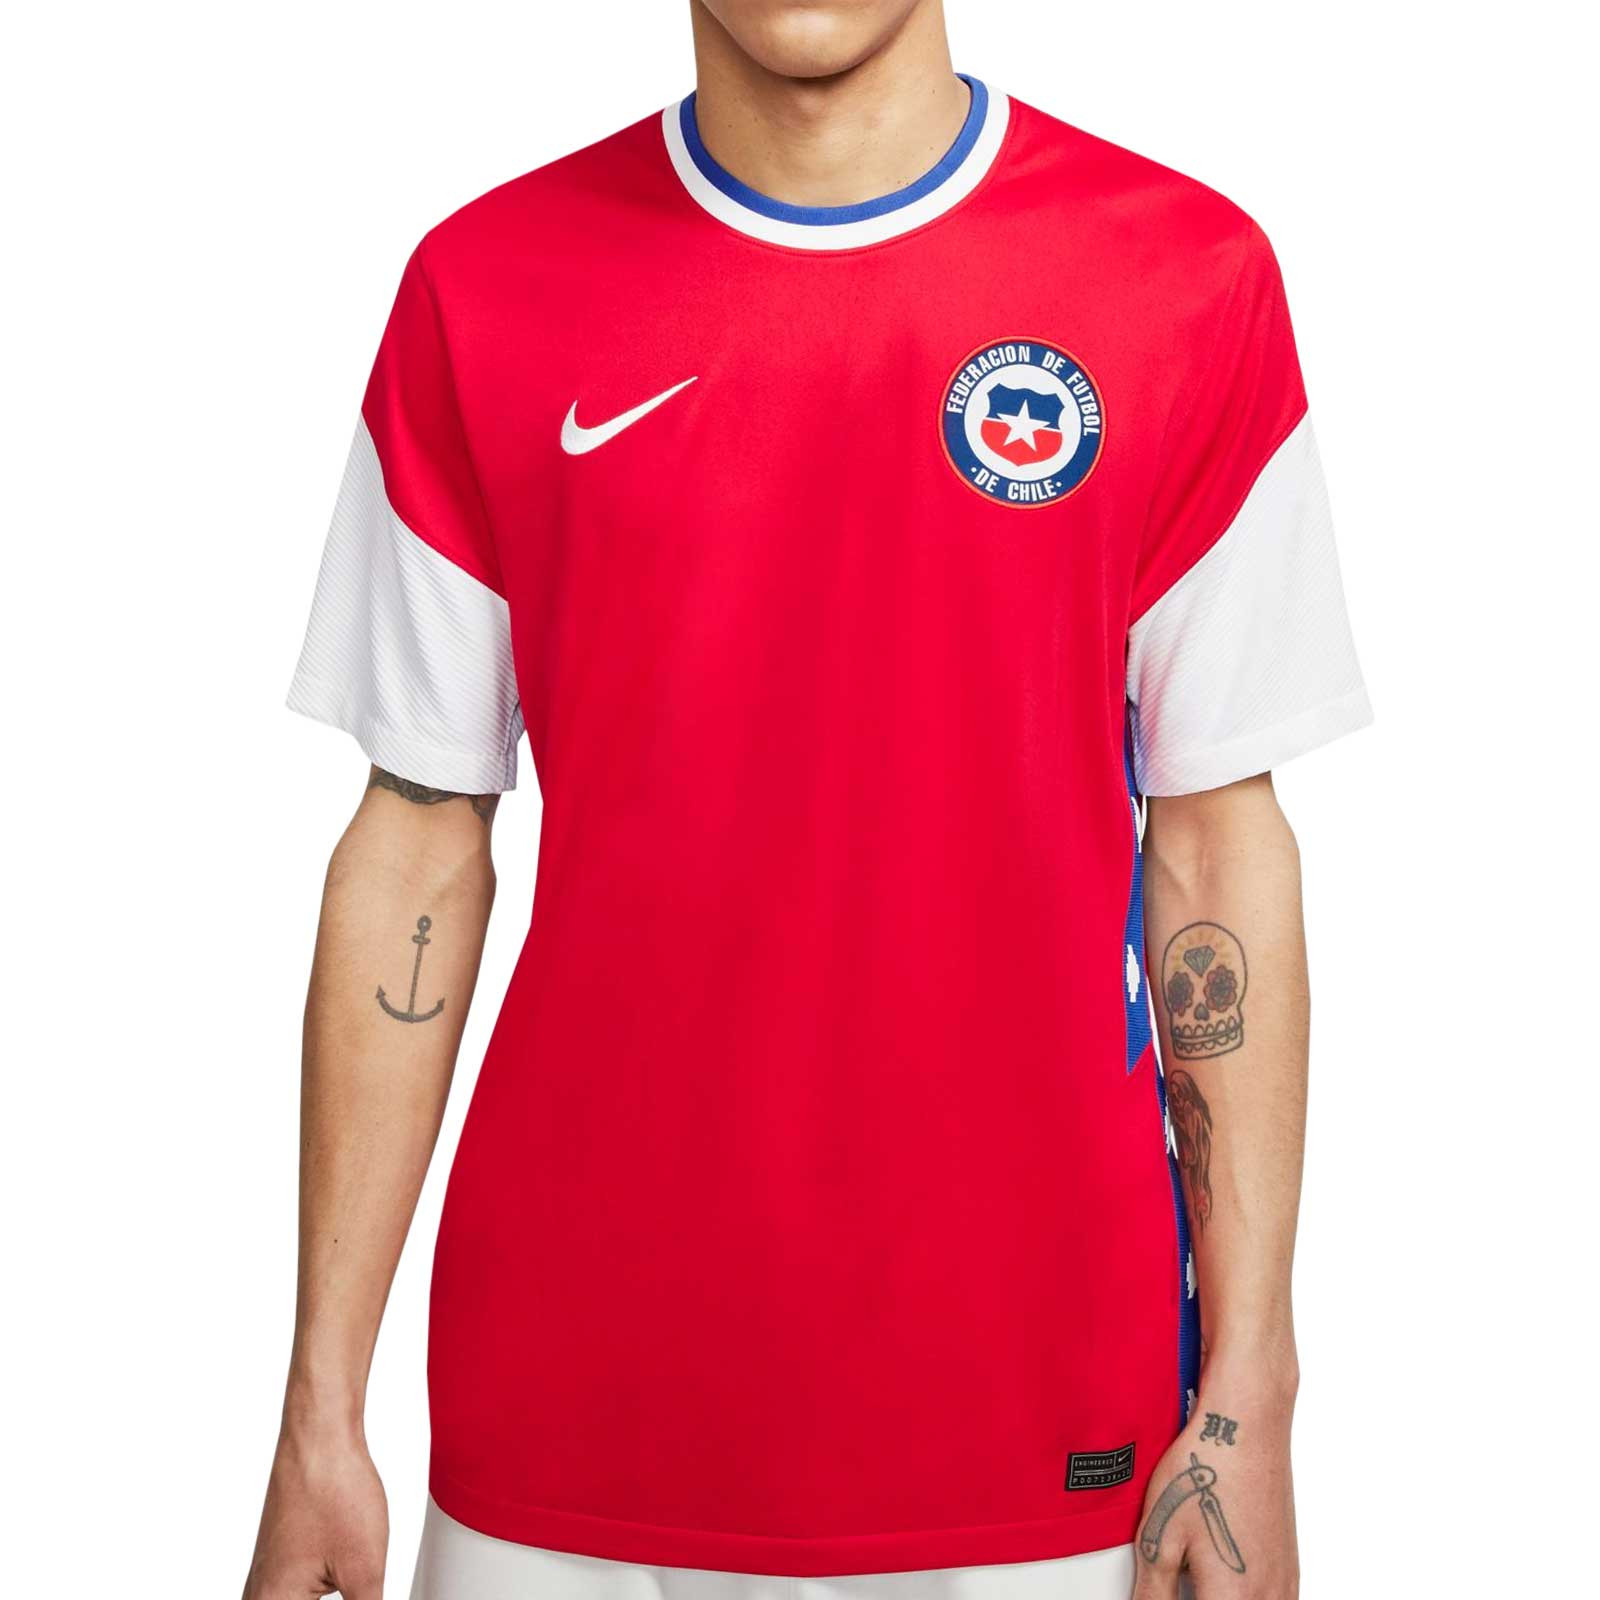 Arroyo peine fuego Camiseta Nike Chile 2020 2021 Stadium roja | futbolmania